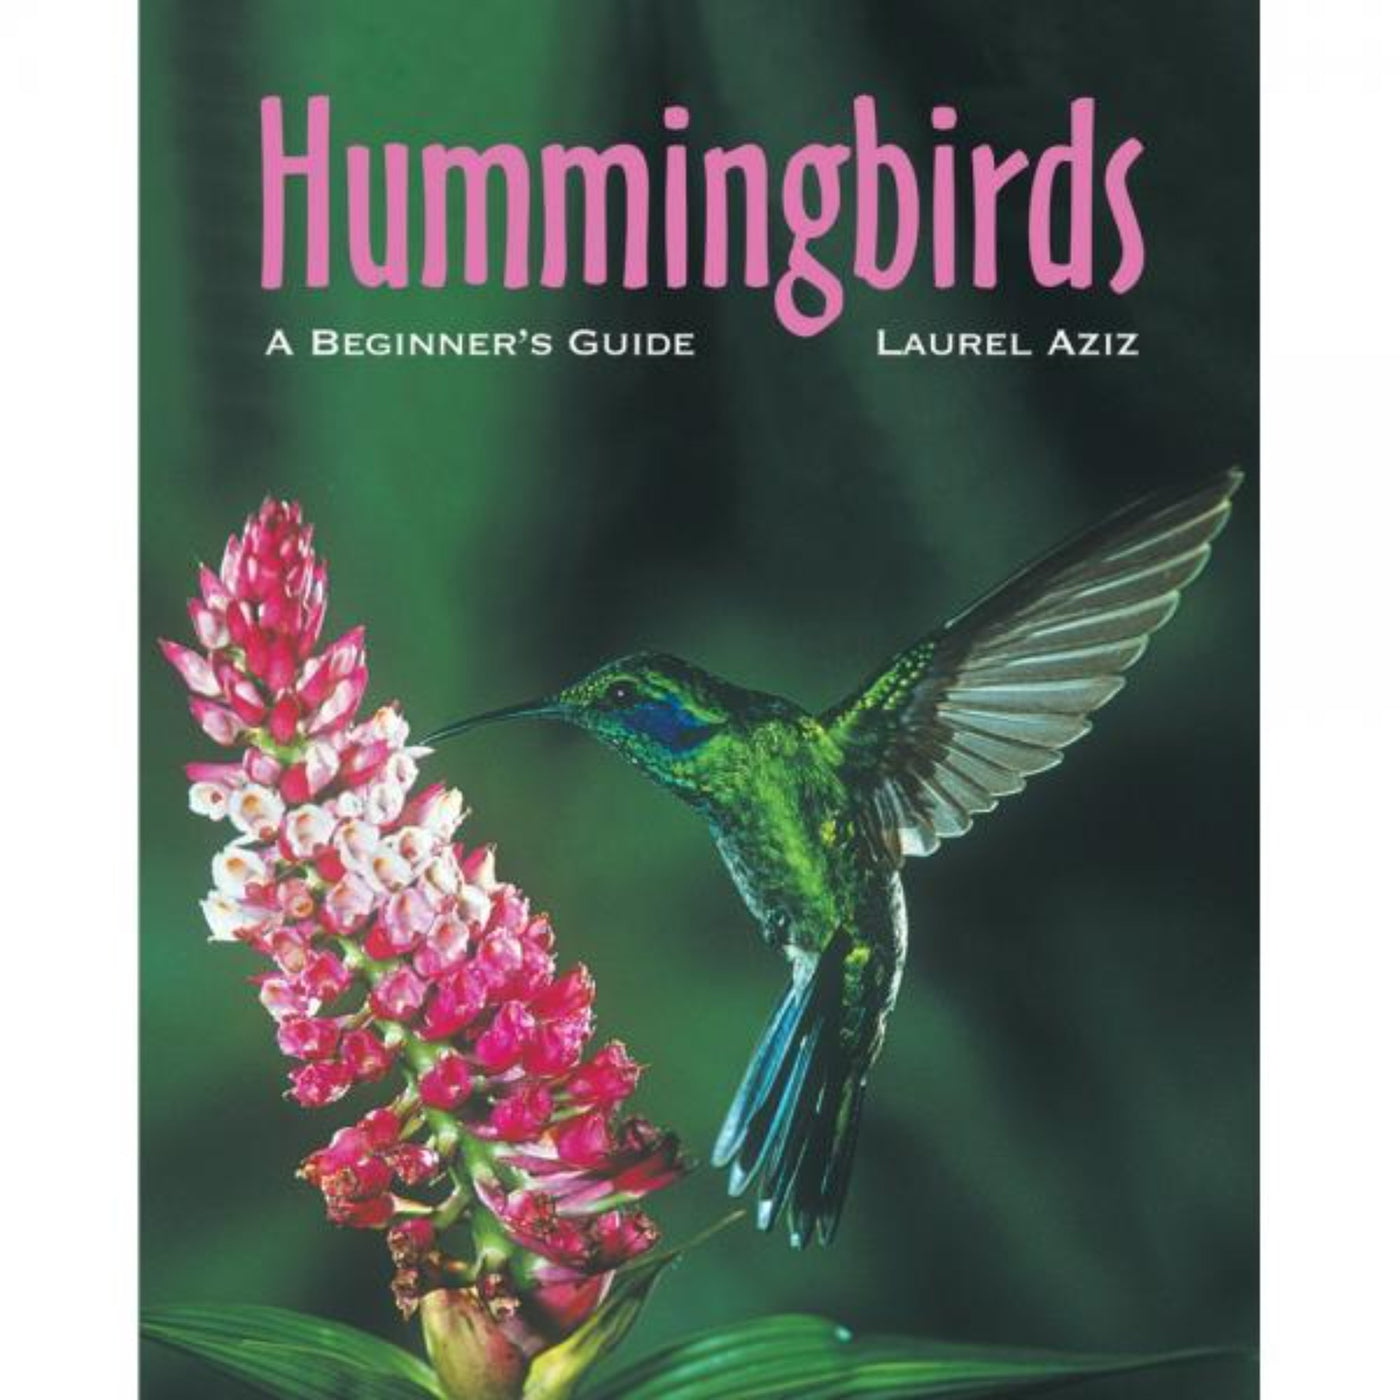 Hummingbirds: A Beginners Guide